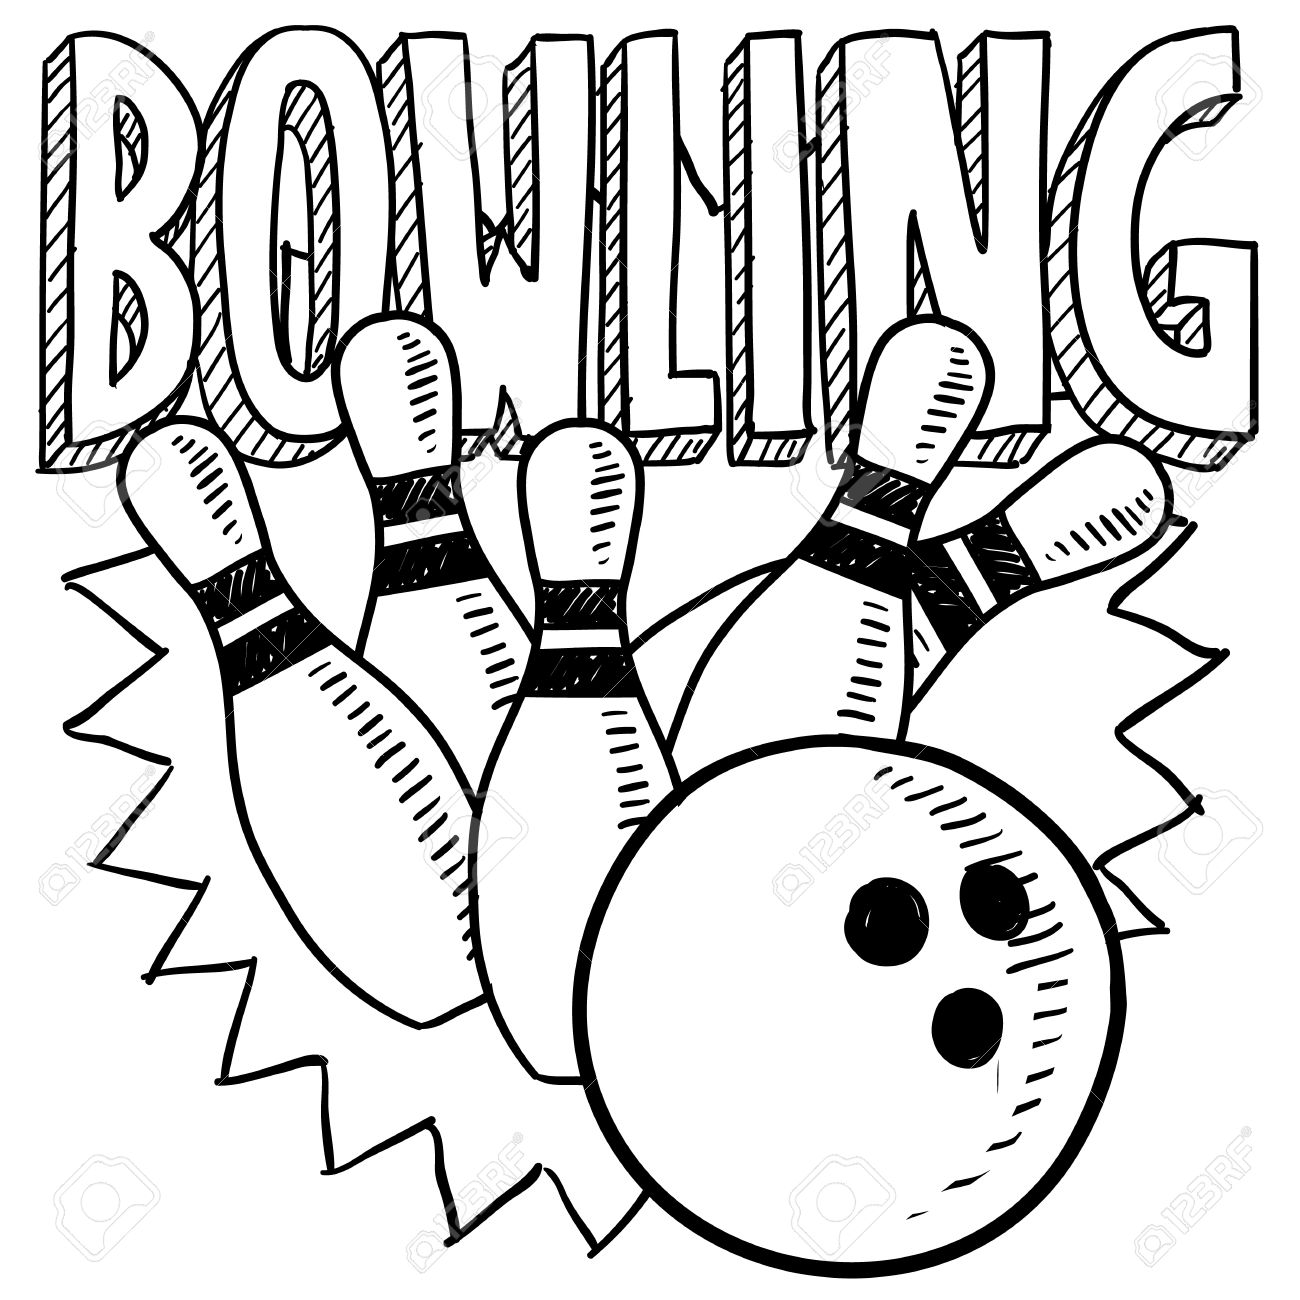 Bowling Ball Drawing at GetDrawings Free download